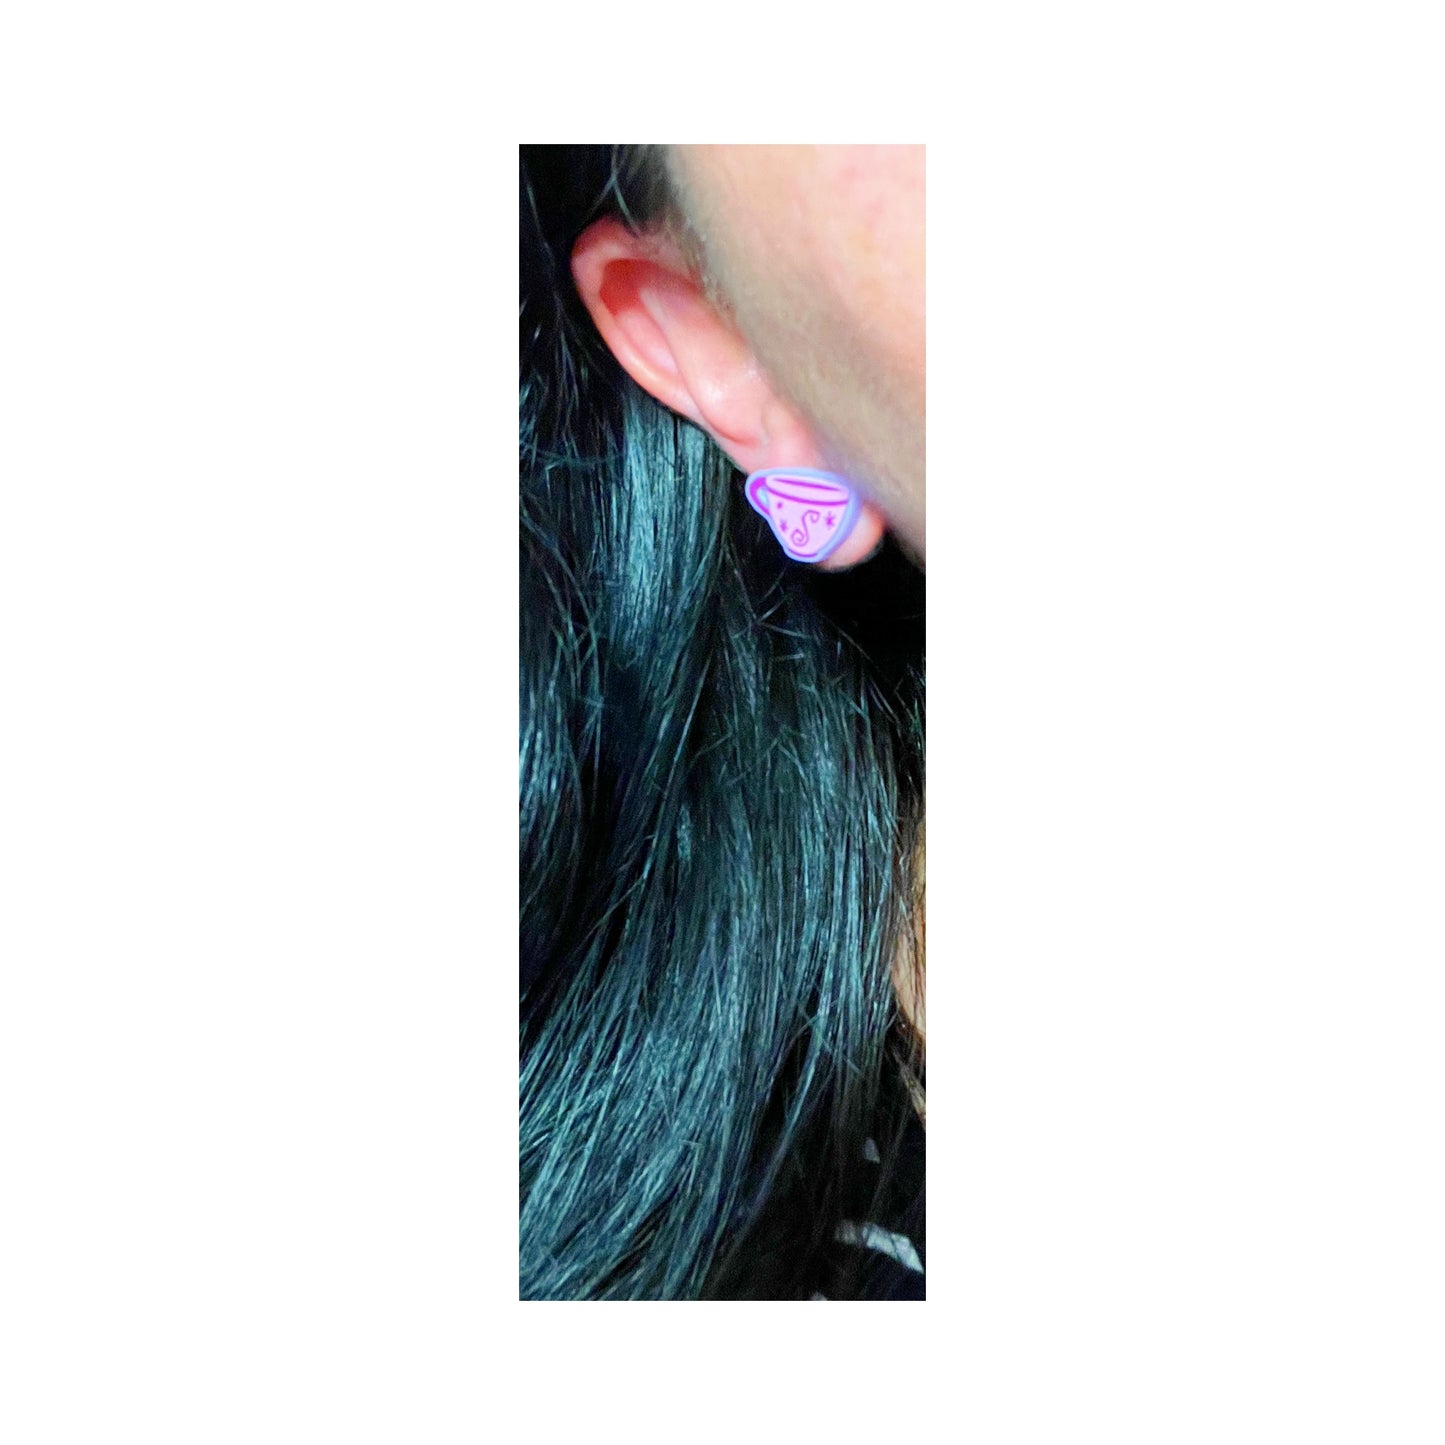 Purple Teacup Post Earrings